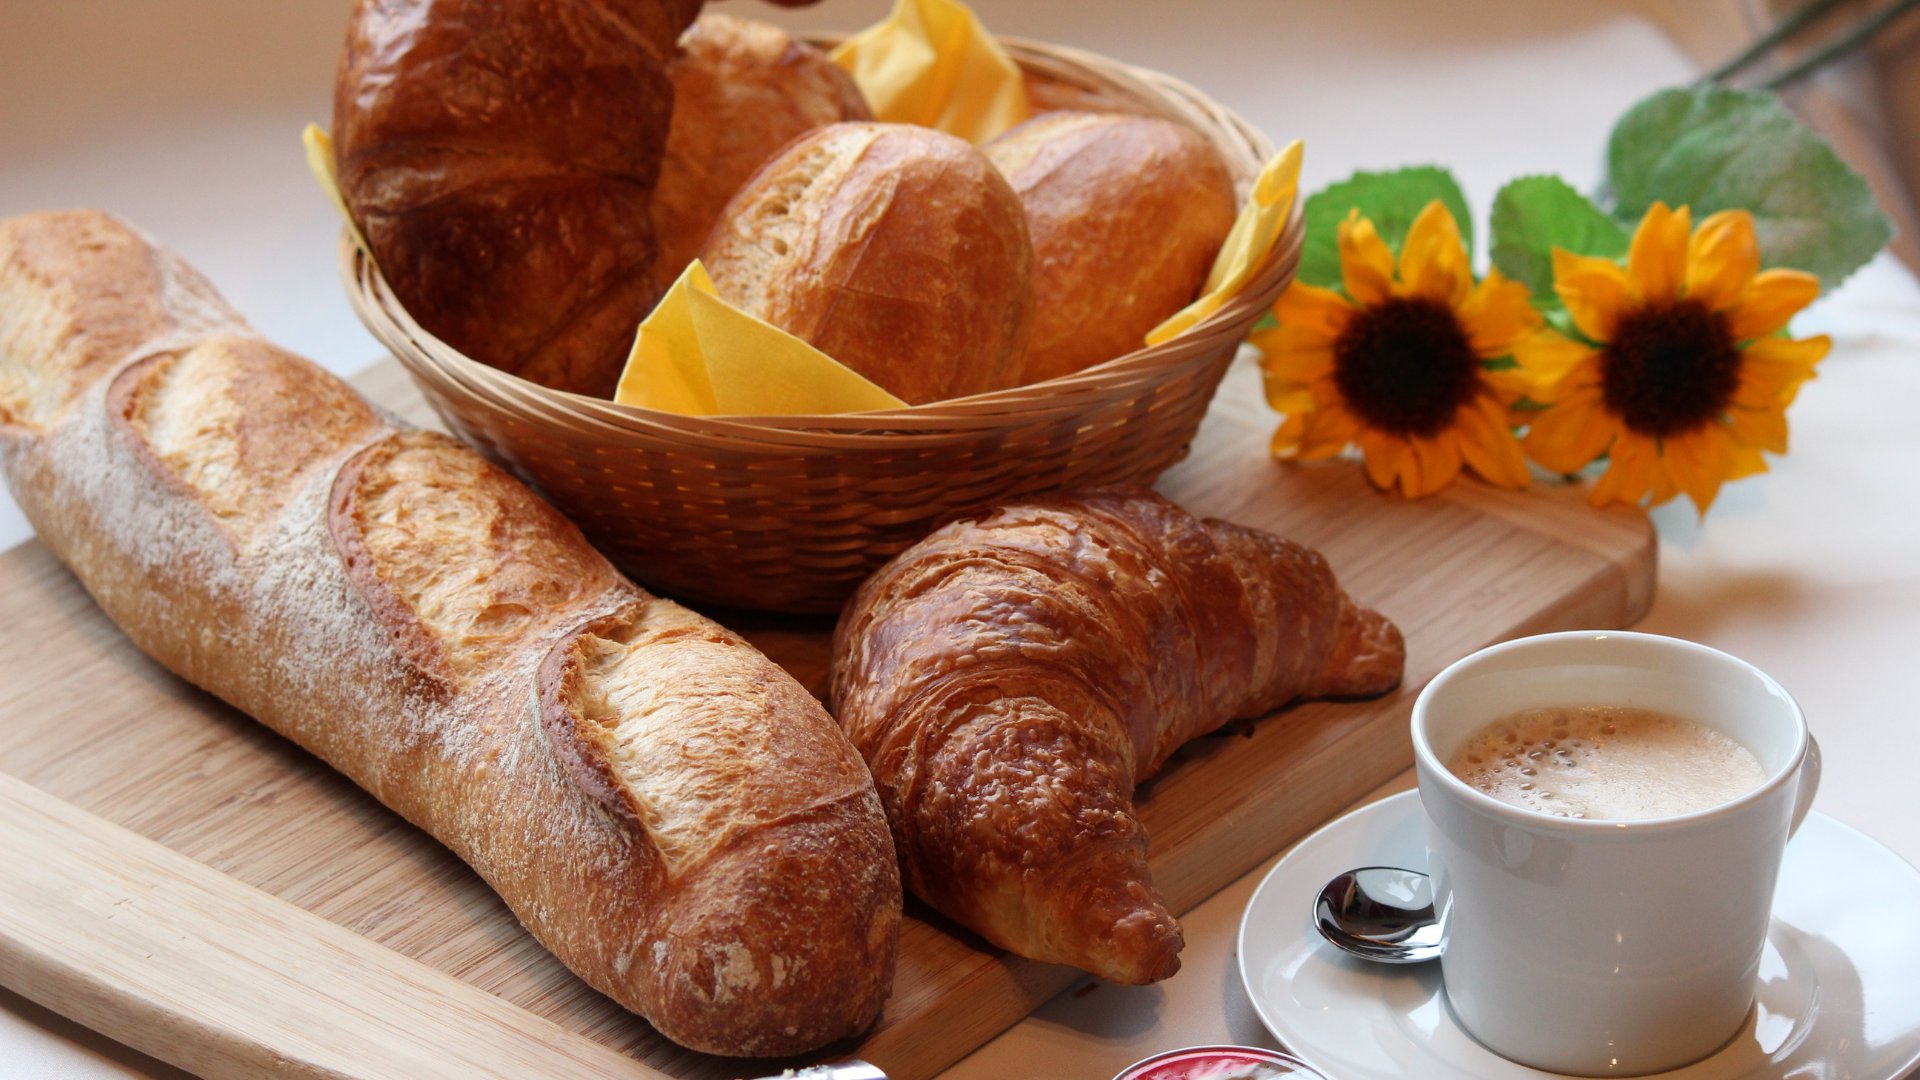 Prato de café da manhã com pães, xícara de café e flor de girassol